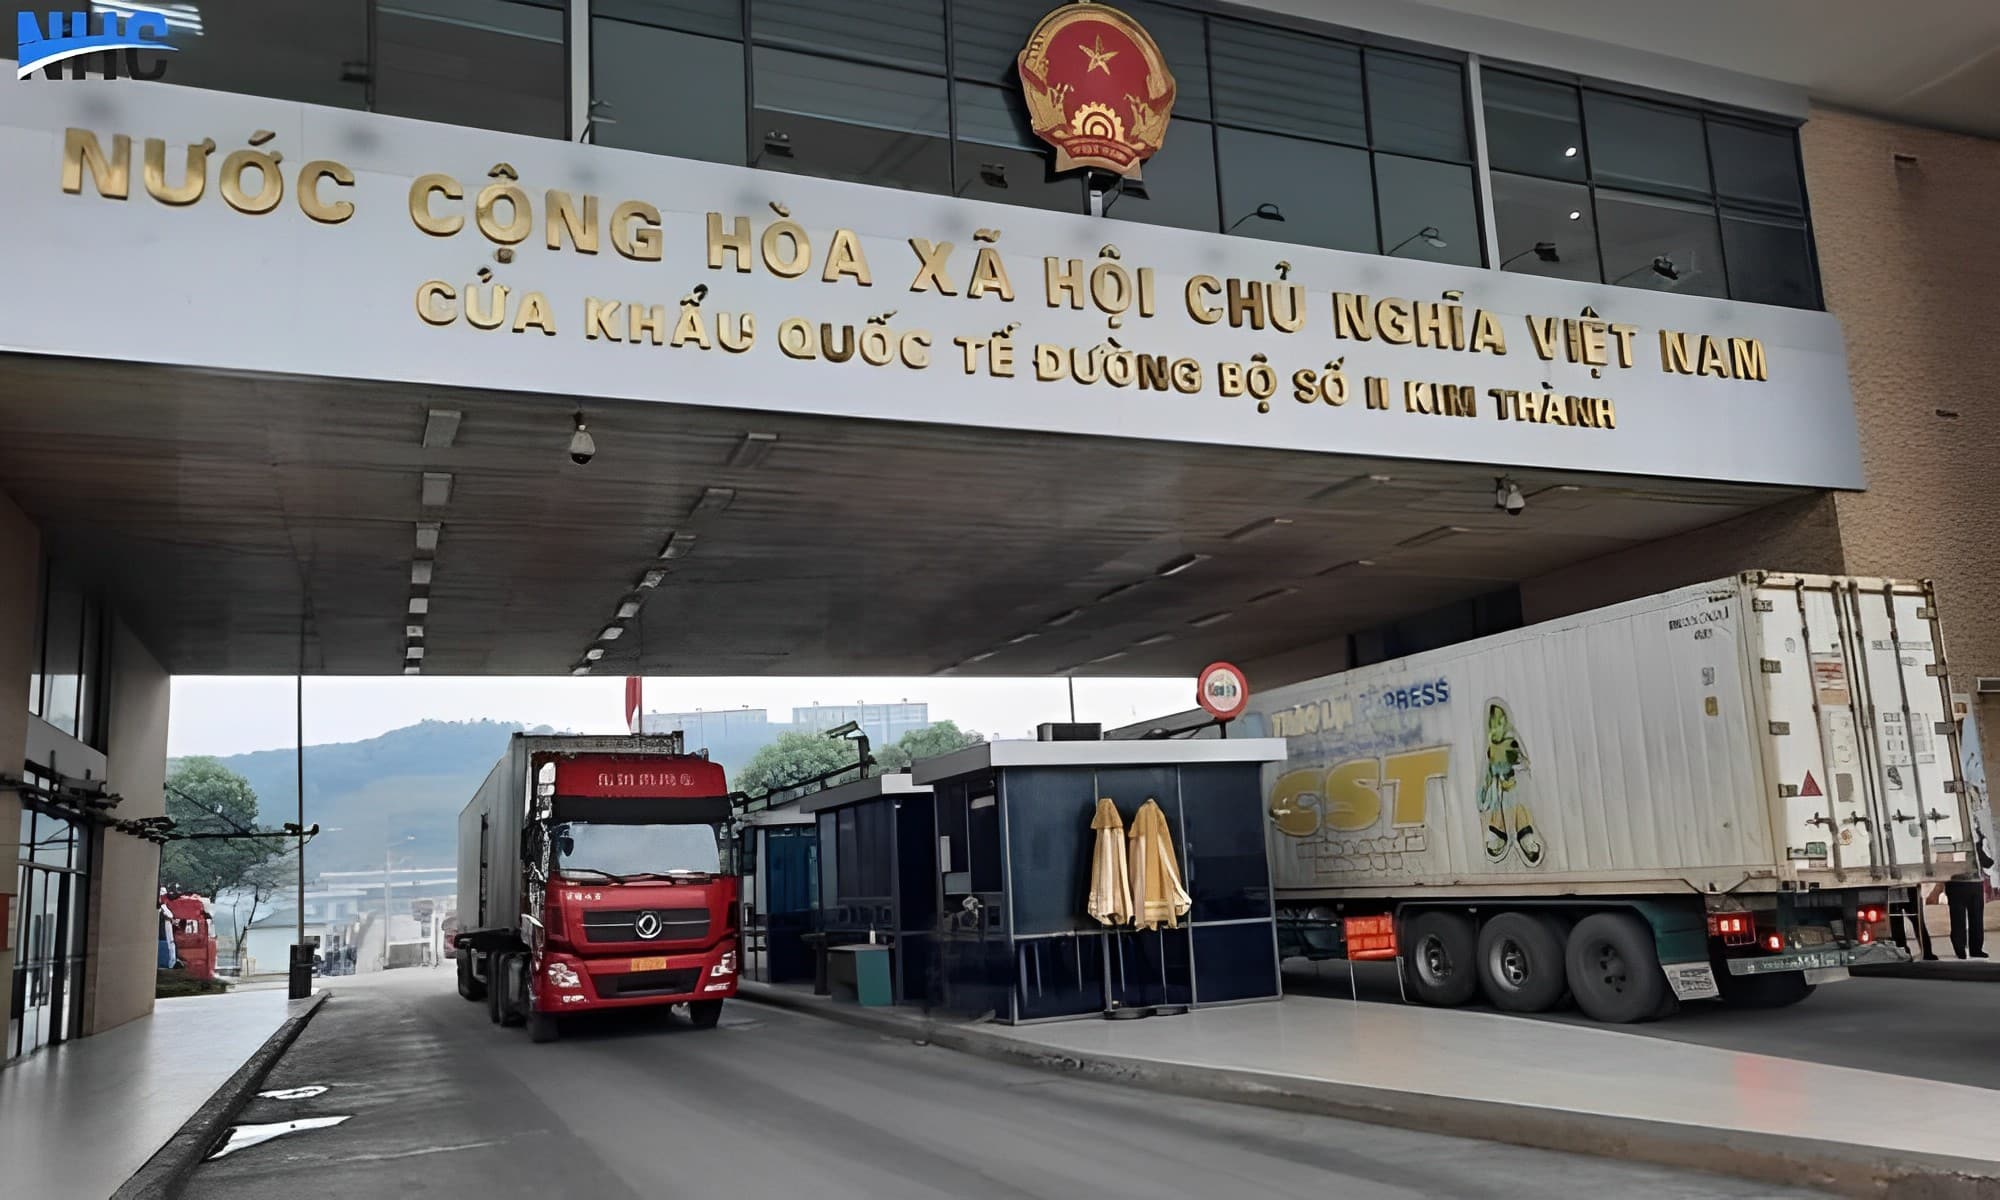 Vận chuyển tiểu ngạch từ Trung Quốc về Việt Nam có nhiều hình thức vận tải khác nhau